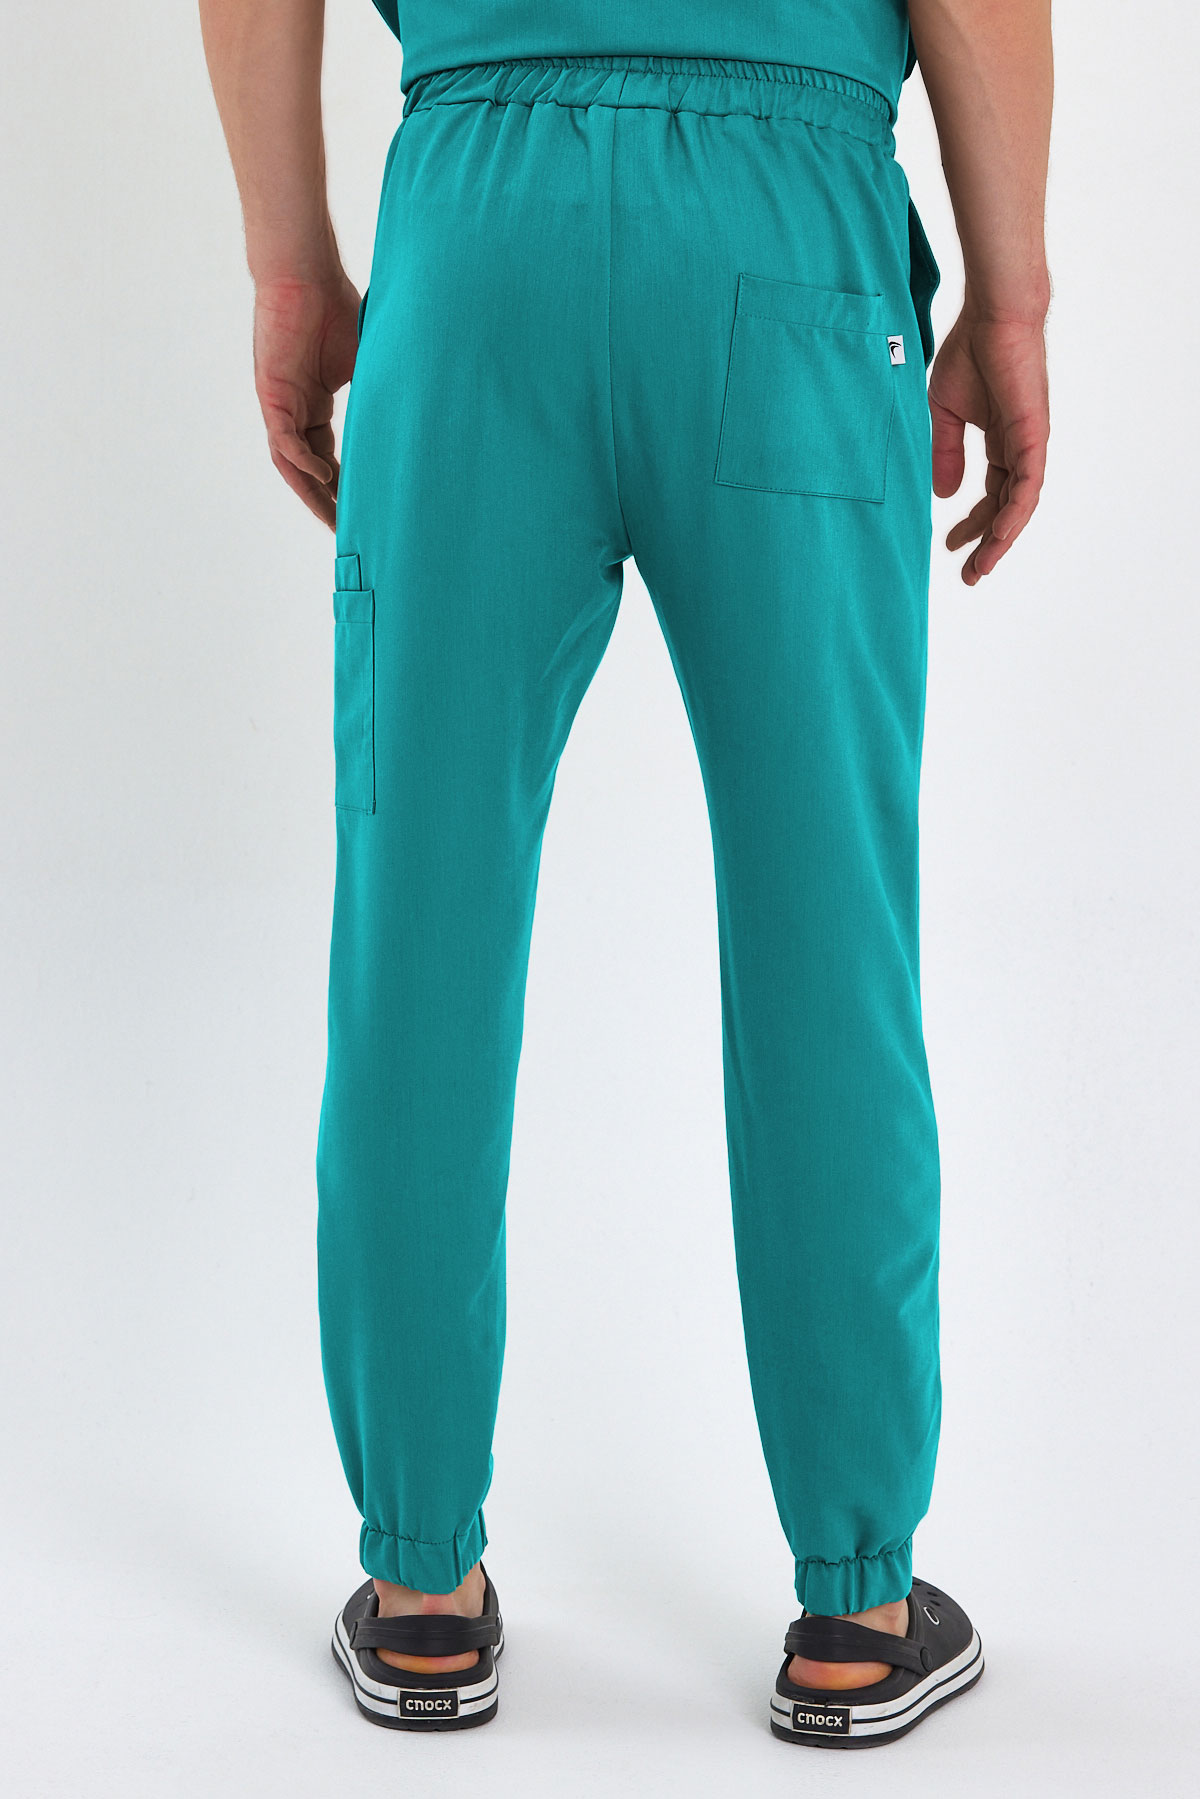 3005 Luxury Cerrahi Yeşil Pantolon